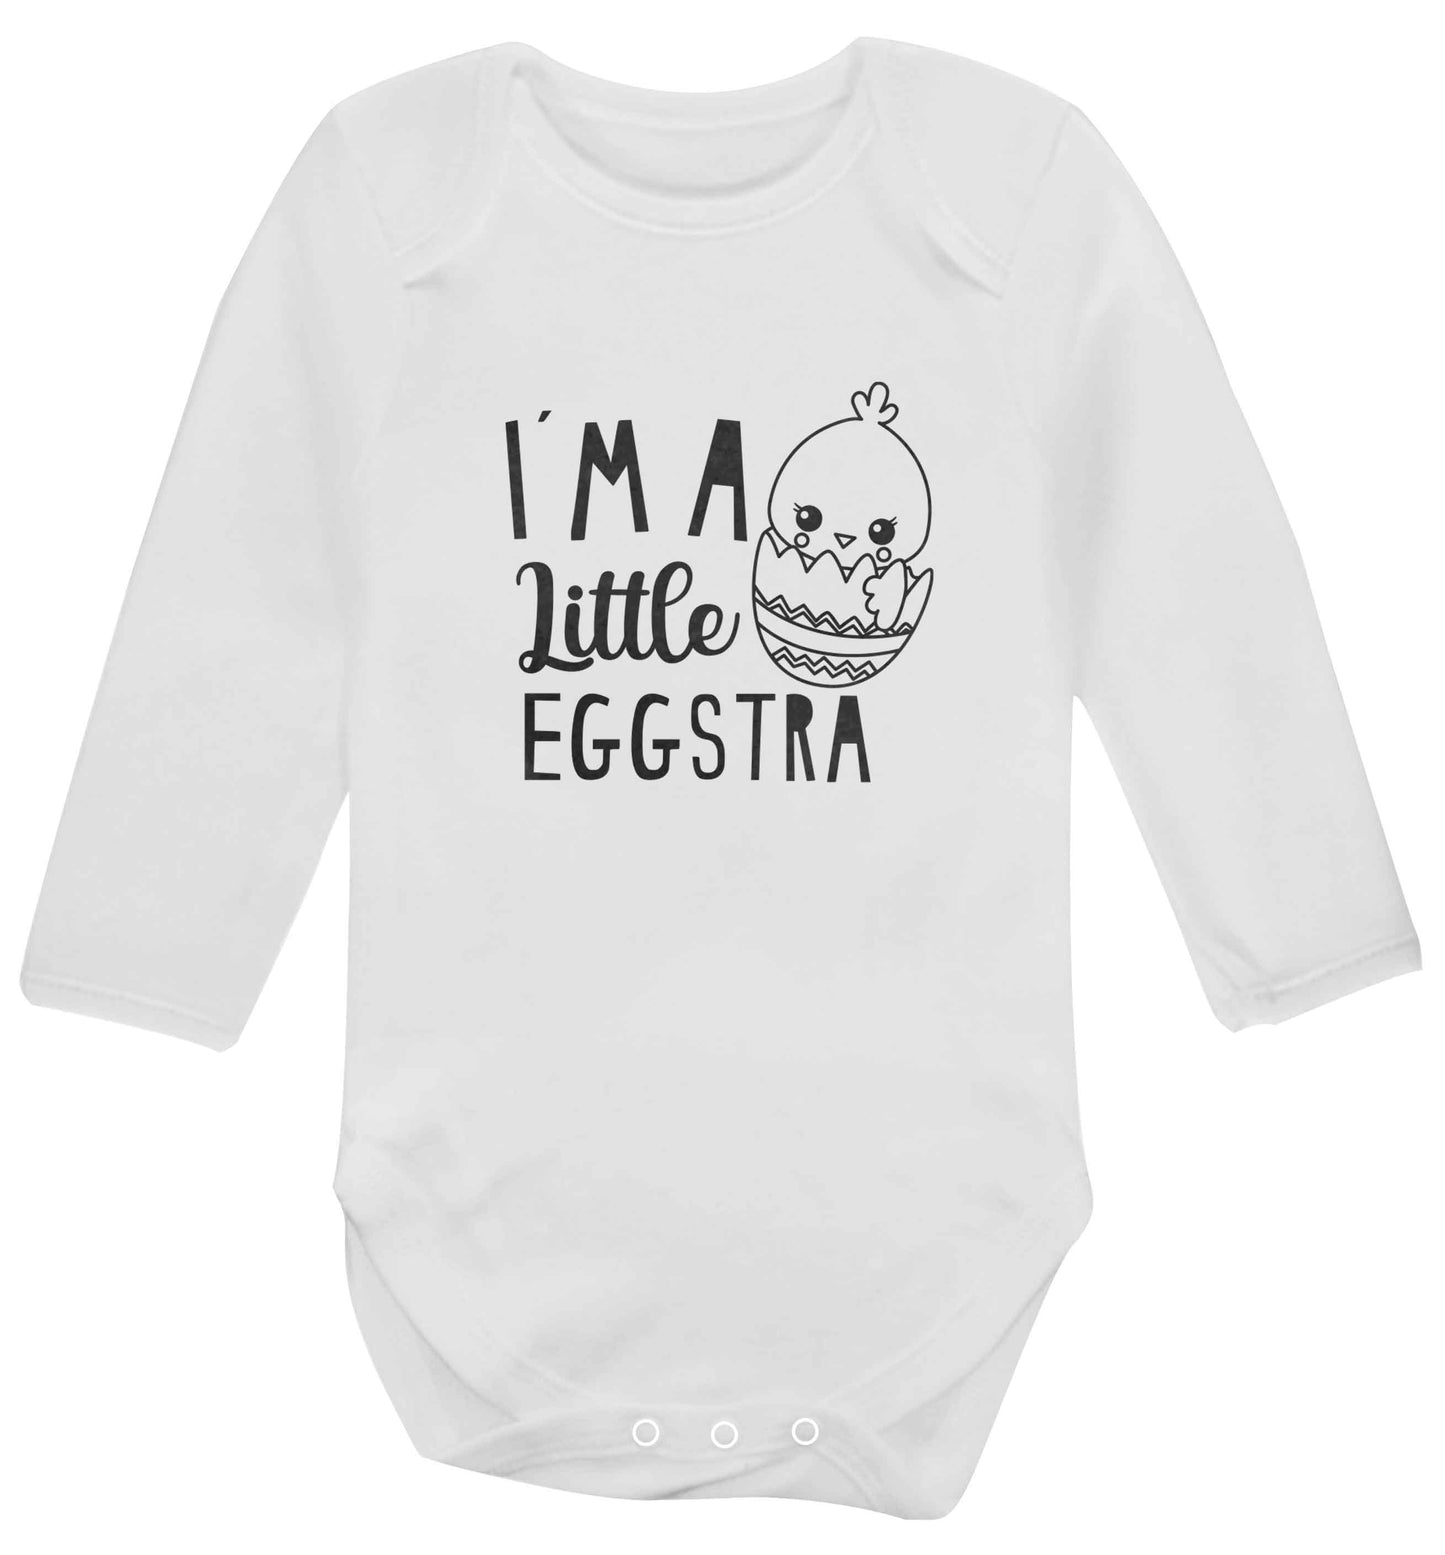 I'm a little eggstra baby vest long sleeved white 6-12 months